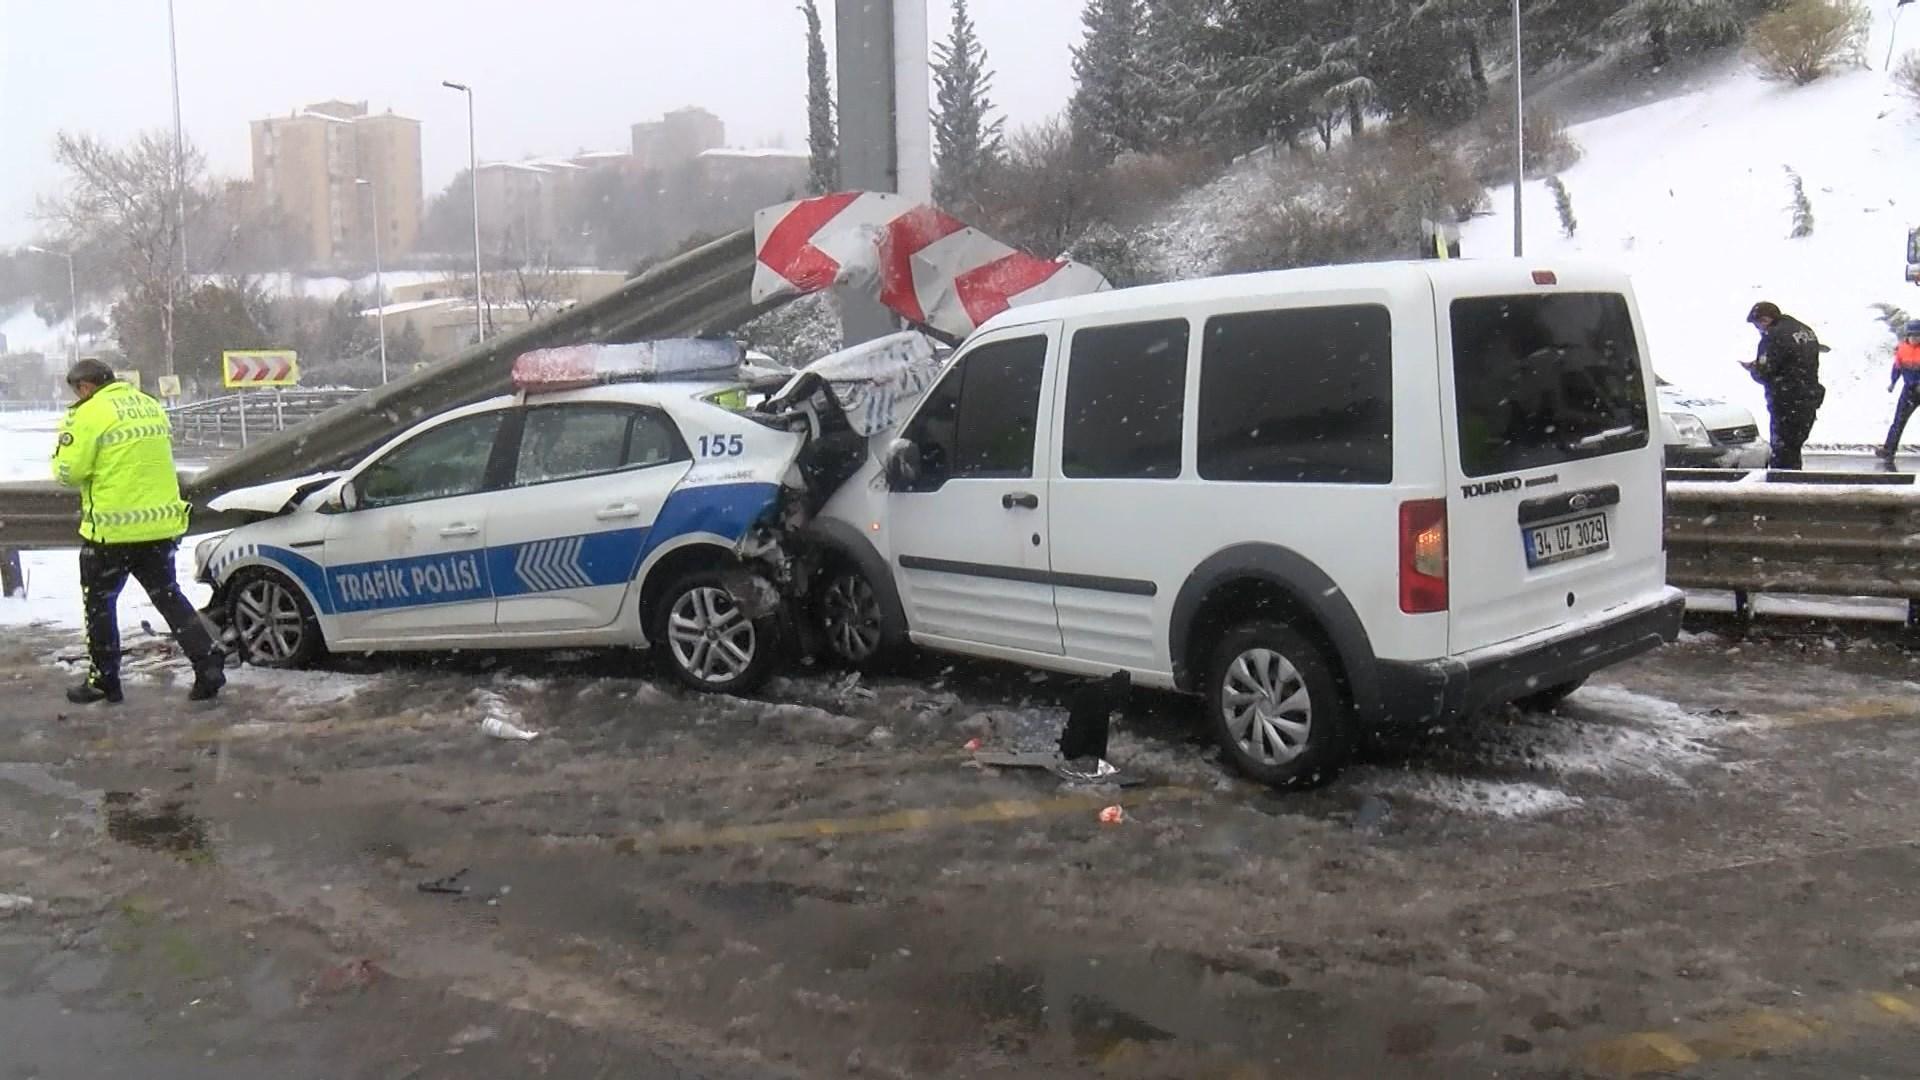 Beşiktaşta sivil polis aracı, trafik polisi aracına arkadan çarptı: 3 polis yaralandı